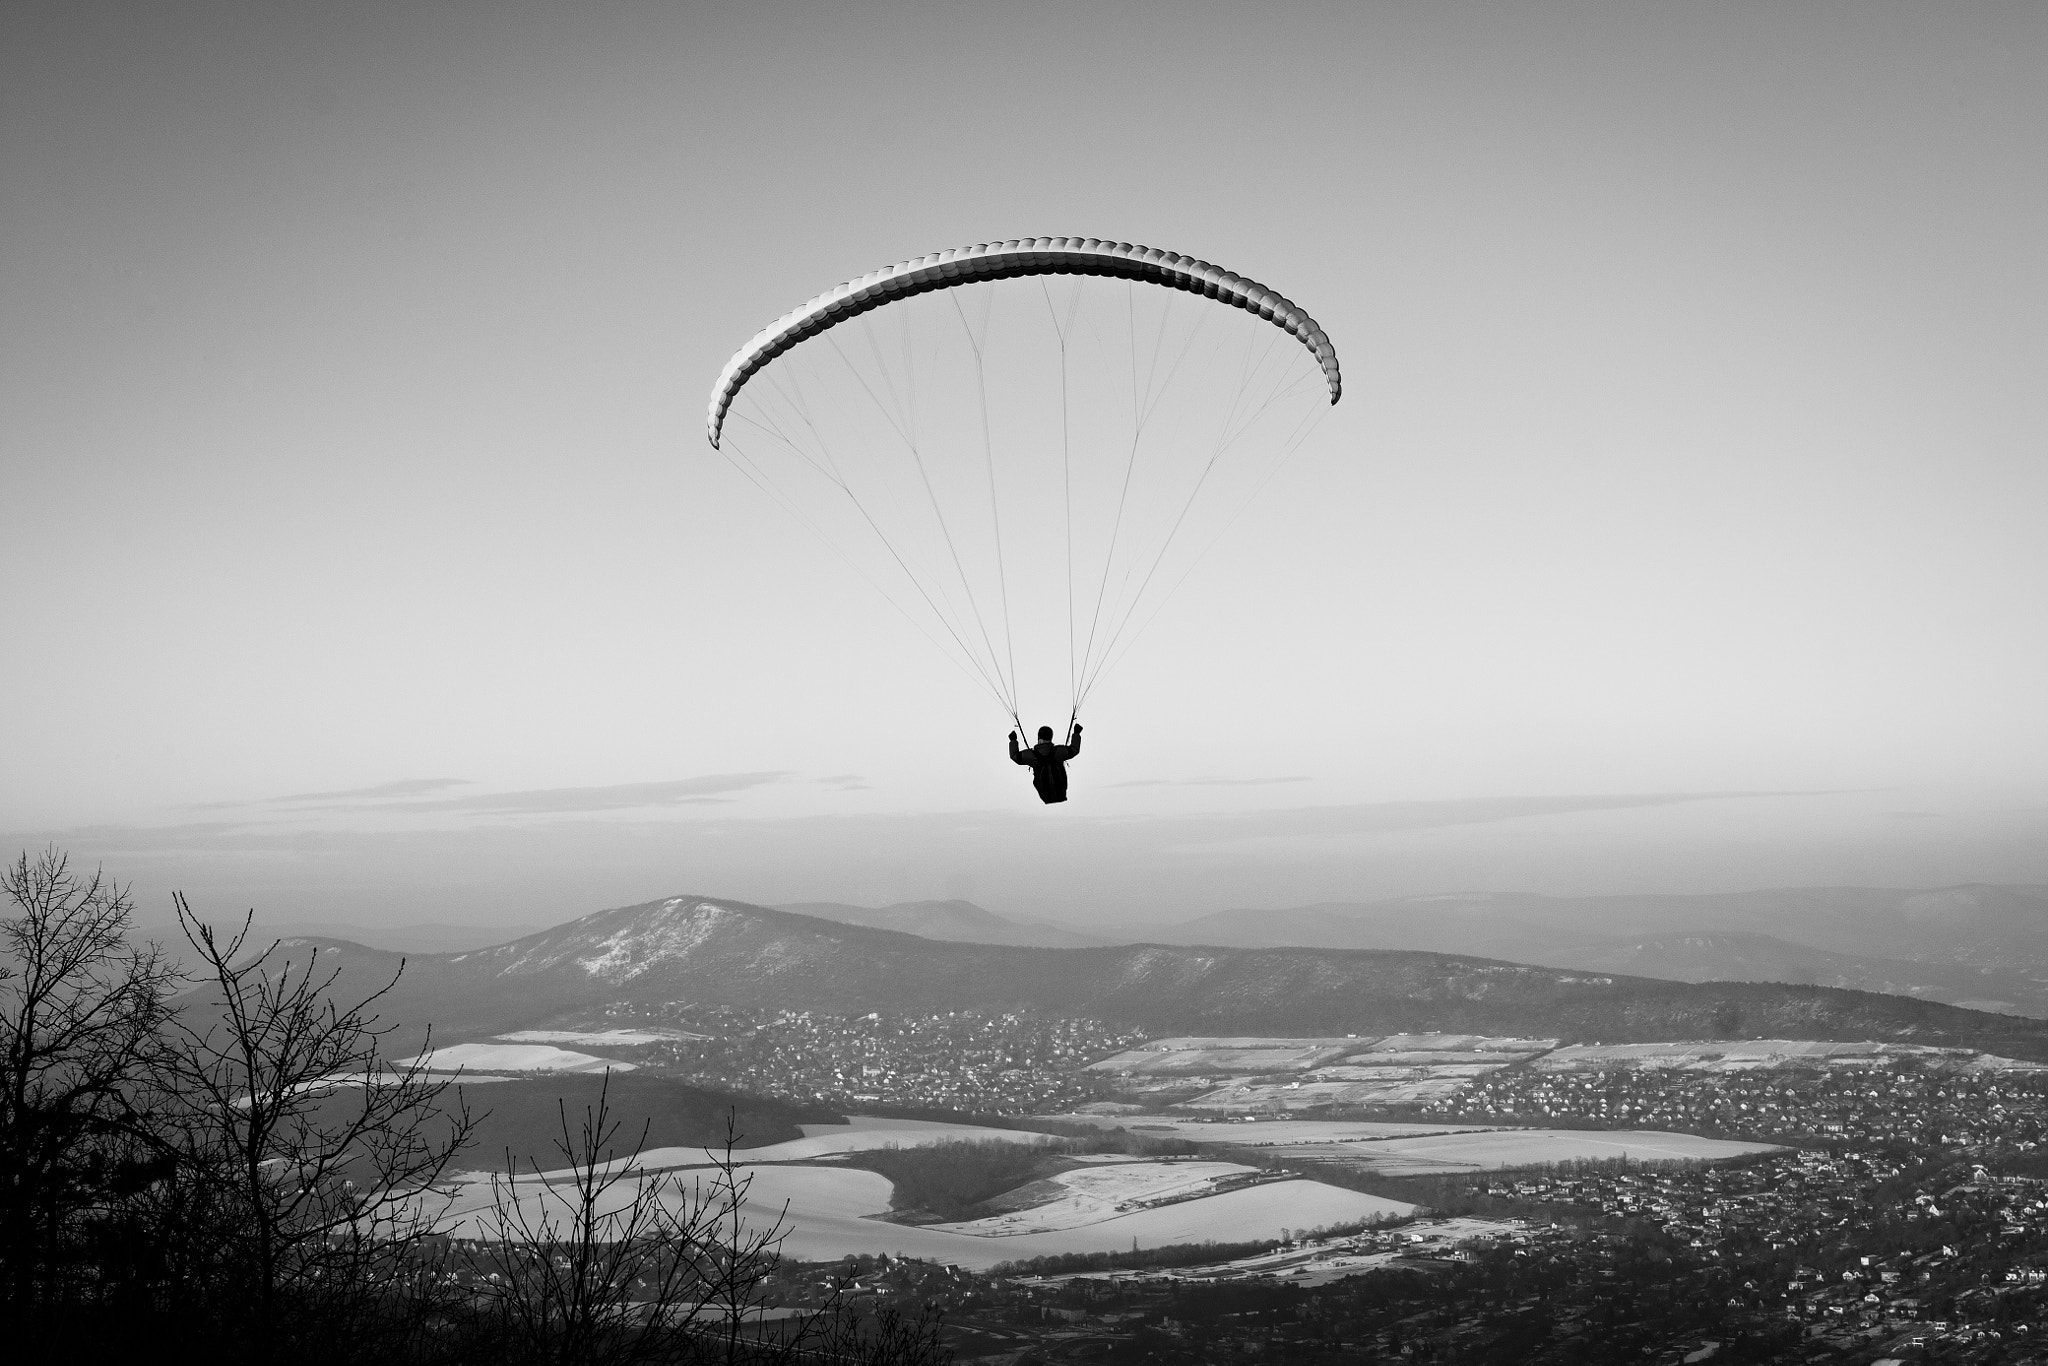 Sony Alpha DSLR-A700 sample photo. Paragliding photography